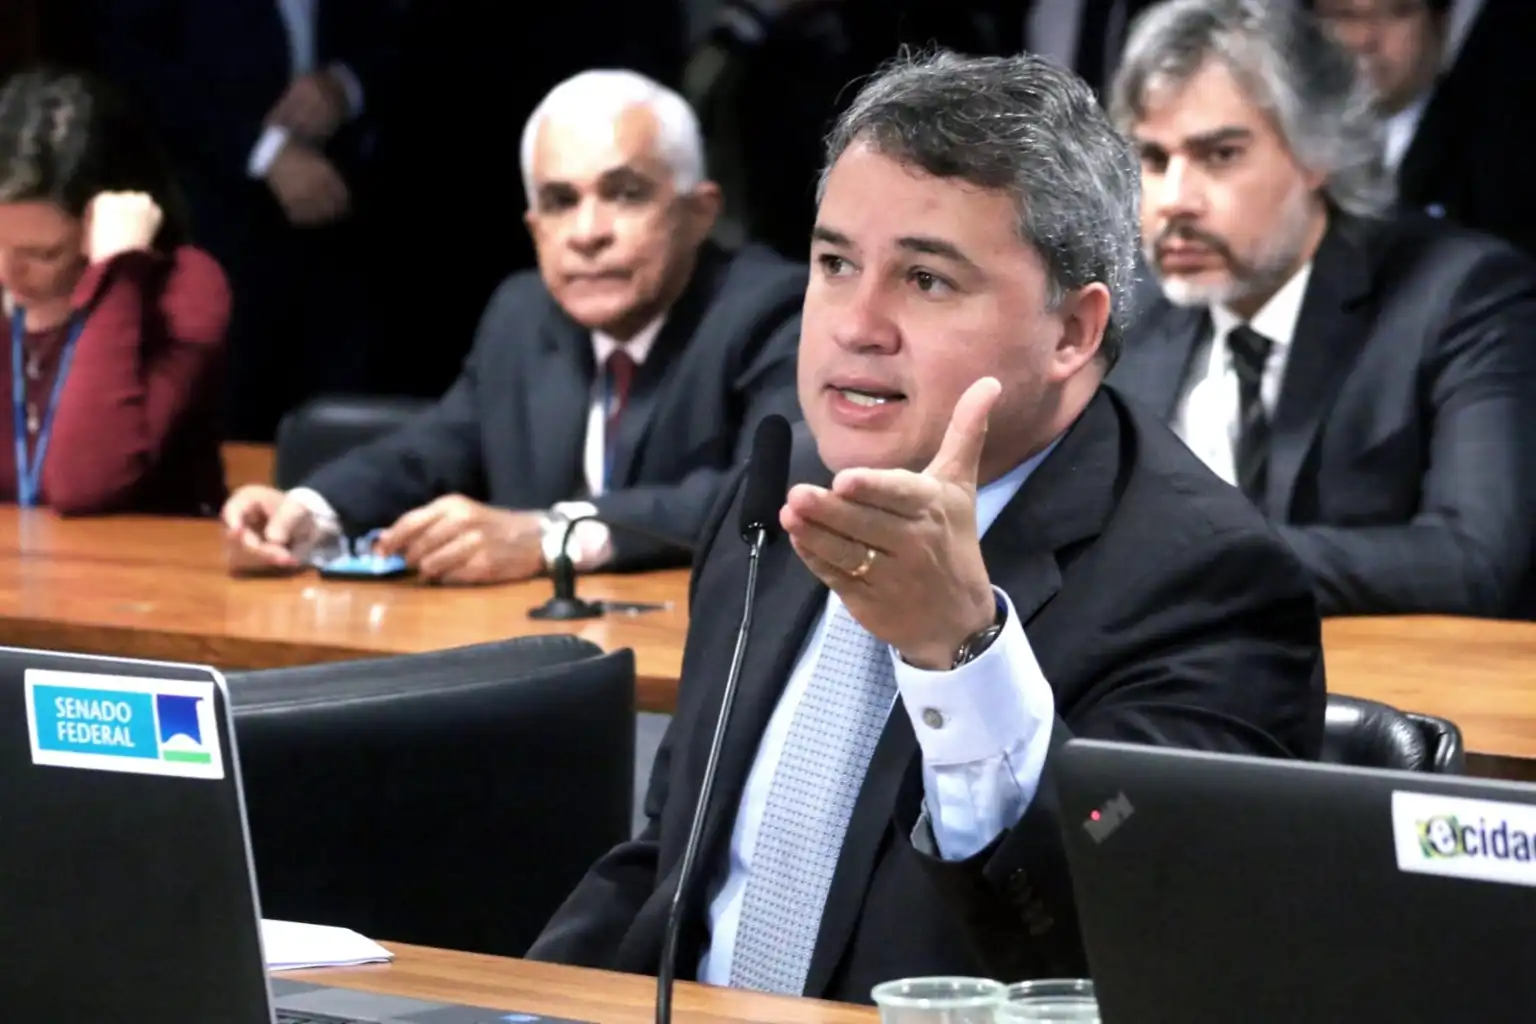 Senador Efraim alerta: “auditoria do TCE contra prefeito de Santa Luzia é sinal de dinheiro público sendo mal utilizado”